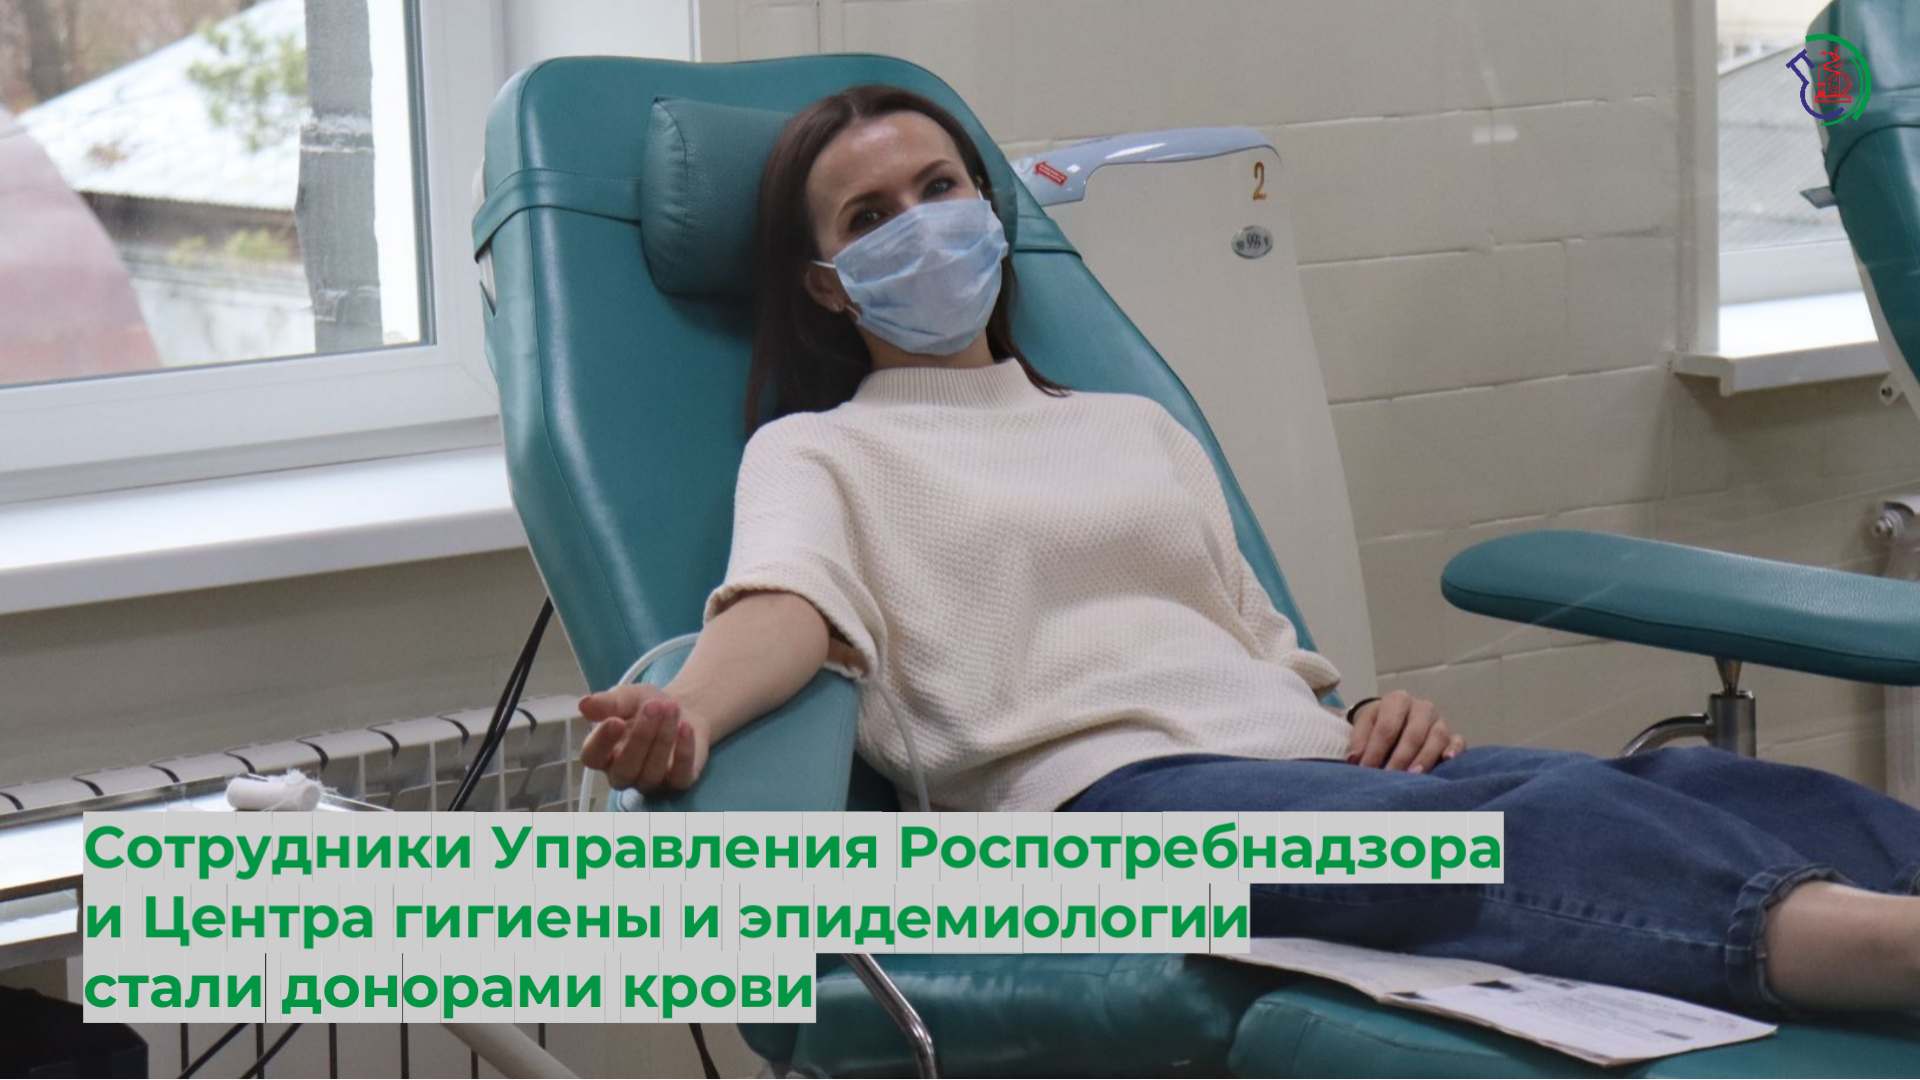 Сотрудники Управления Роспотребнадзора и Центра гигиены и эпидемиологии стали донорами крови